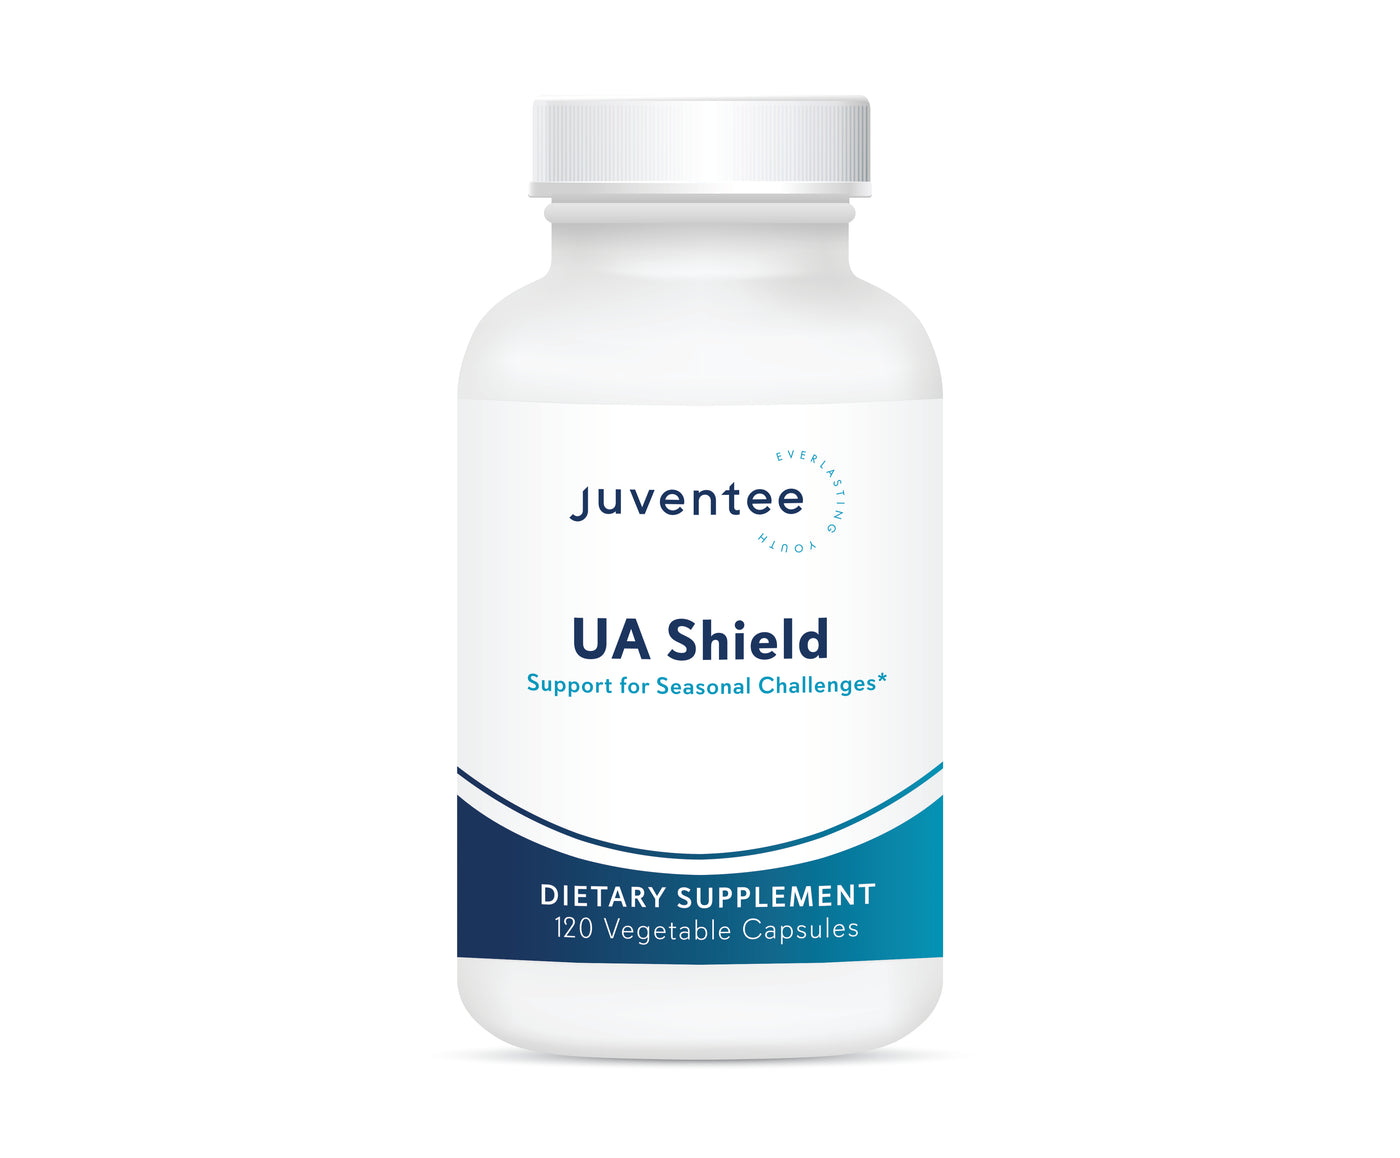 UA Shield (Uric Acid)